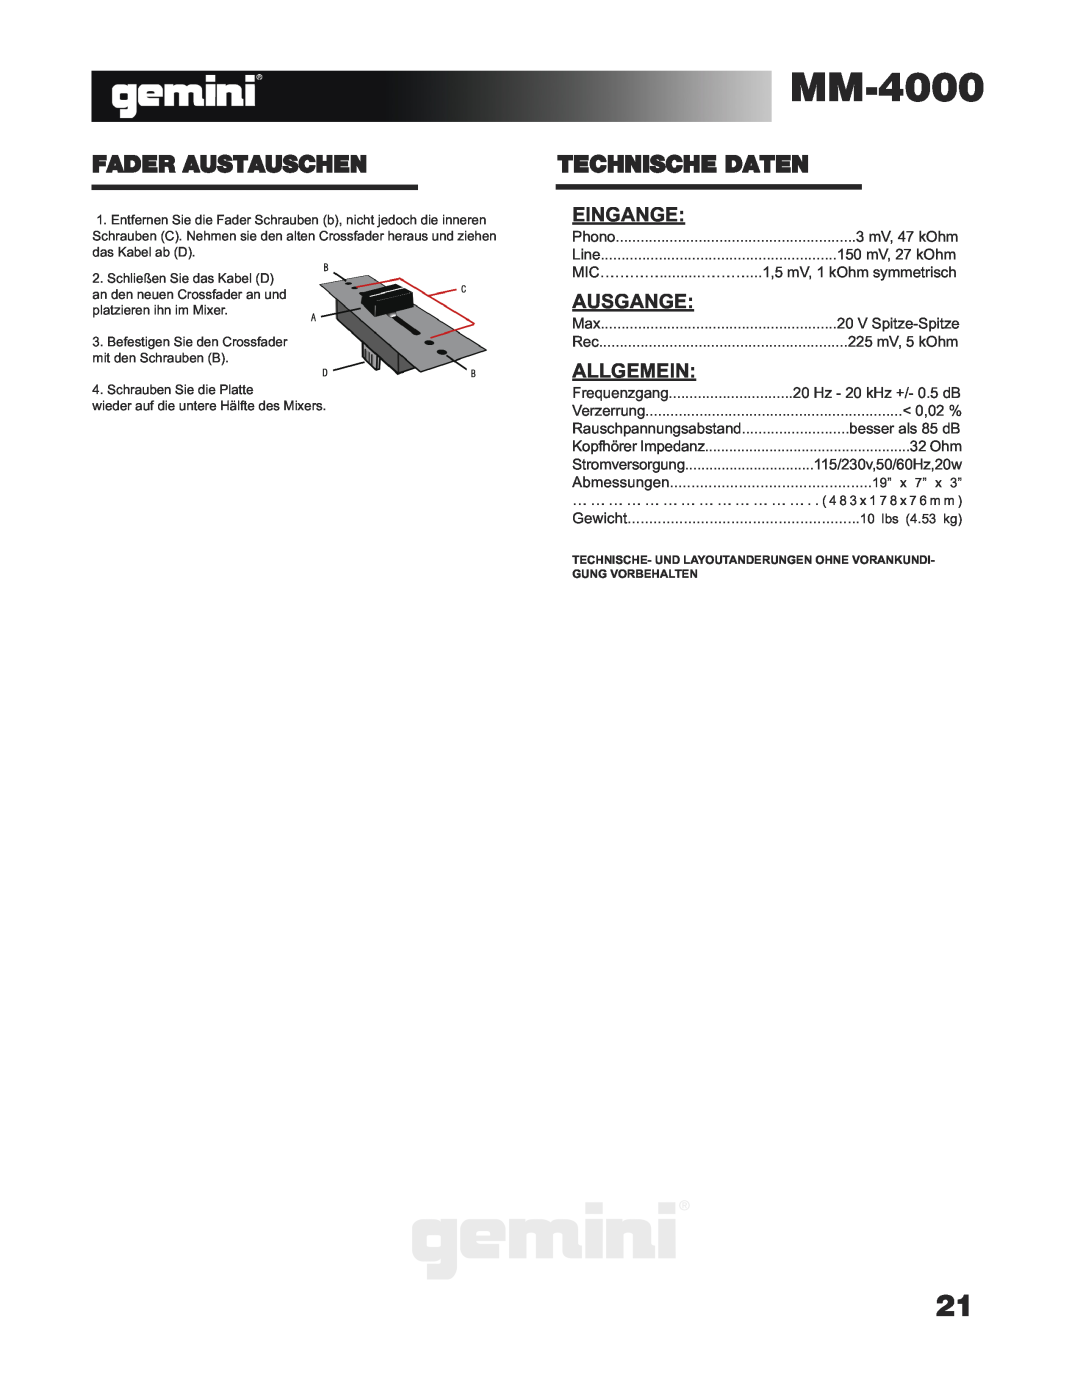 Gemini MM-4000 manual Fader Austauschen, Technische Daten, Eingange, Ausgange, Allgemein 